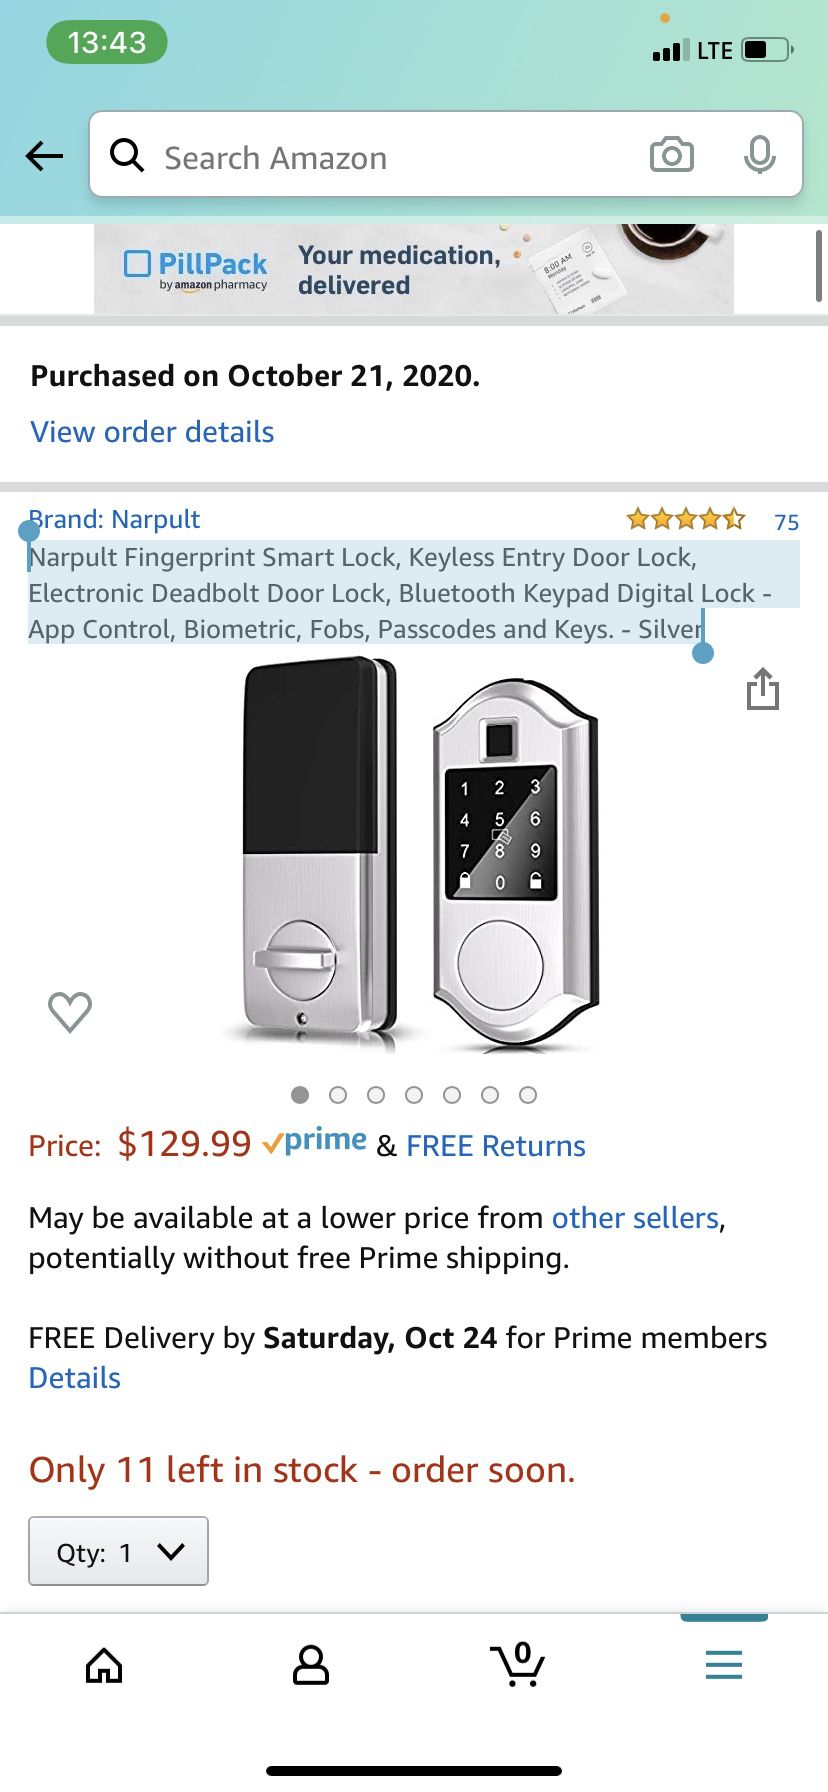 Narpult Fingerprint Smart Lock, Keyless Entry Door Lock, Electronic Deadbolt Door Lock, Bluetooth Keypad Digital Lock - App Control, Biometric, Fobs,